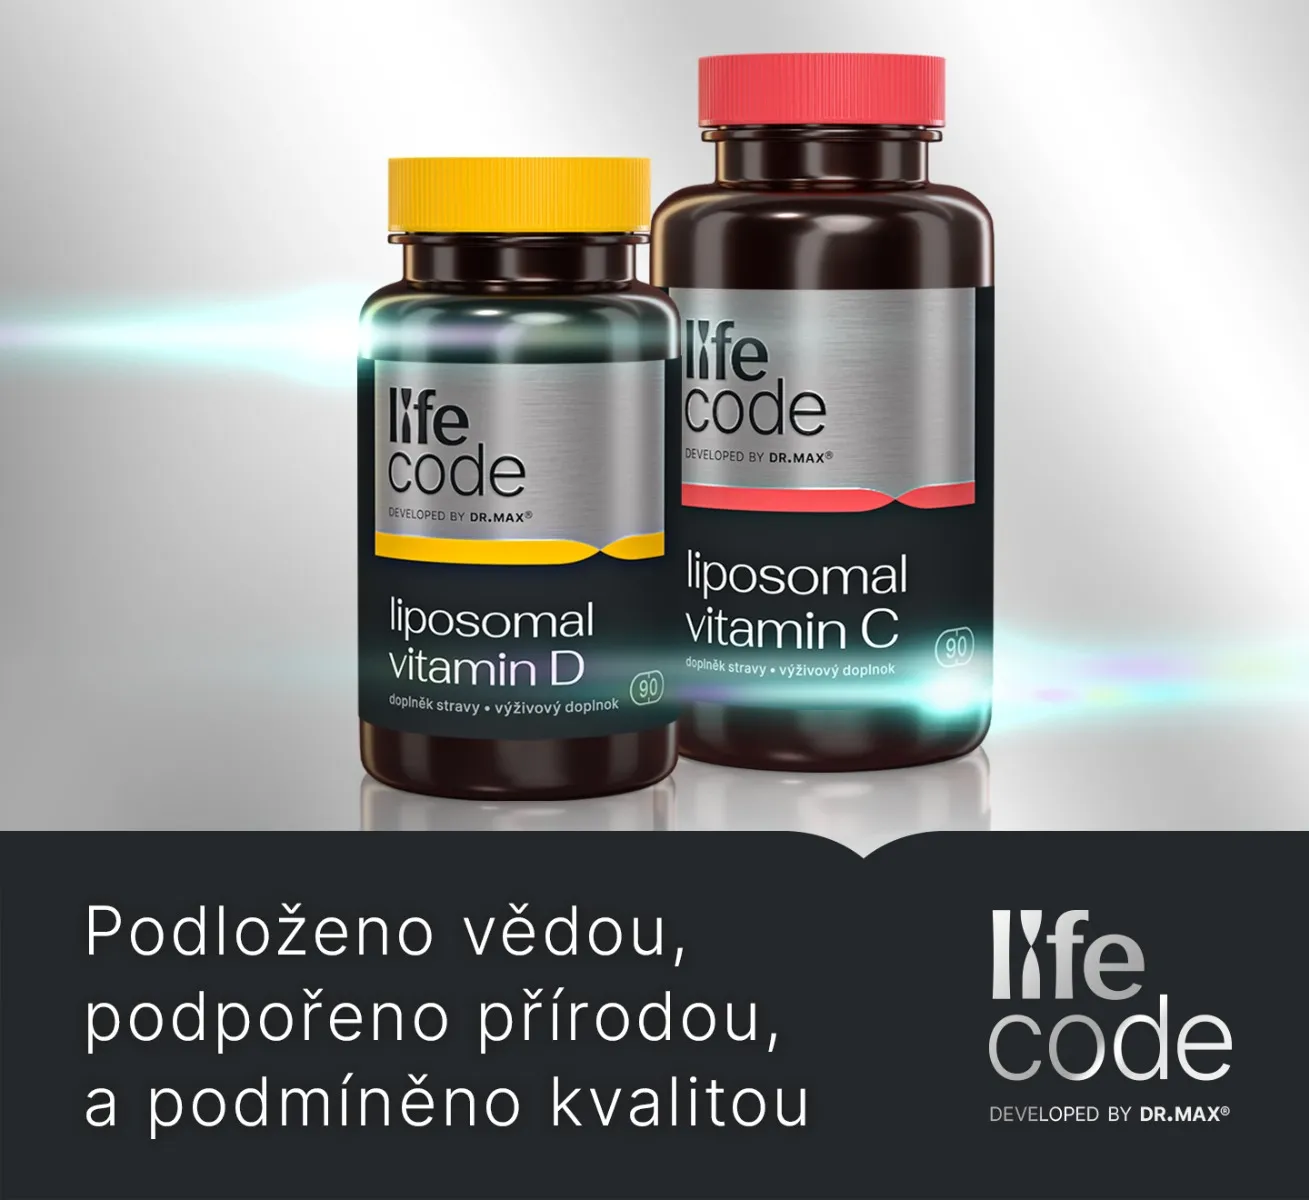 LifeCode developed by Dr. Max® Liposomal Vitamin C 90 kapslí